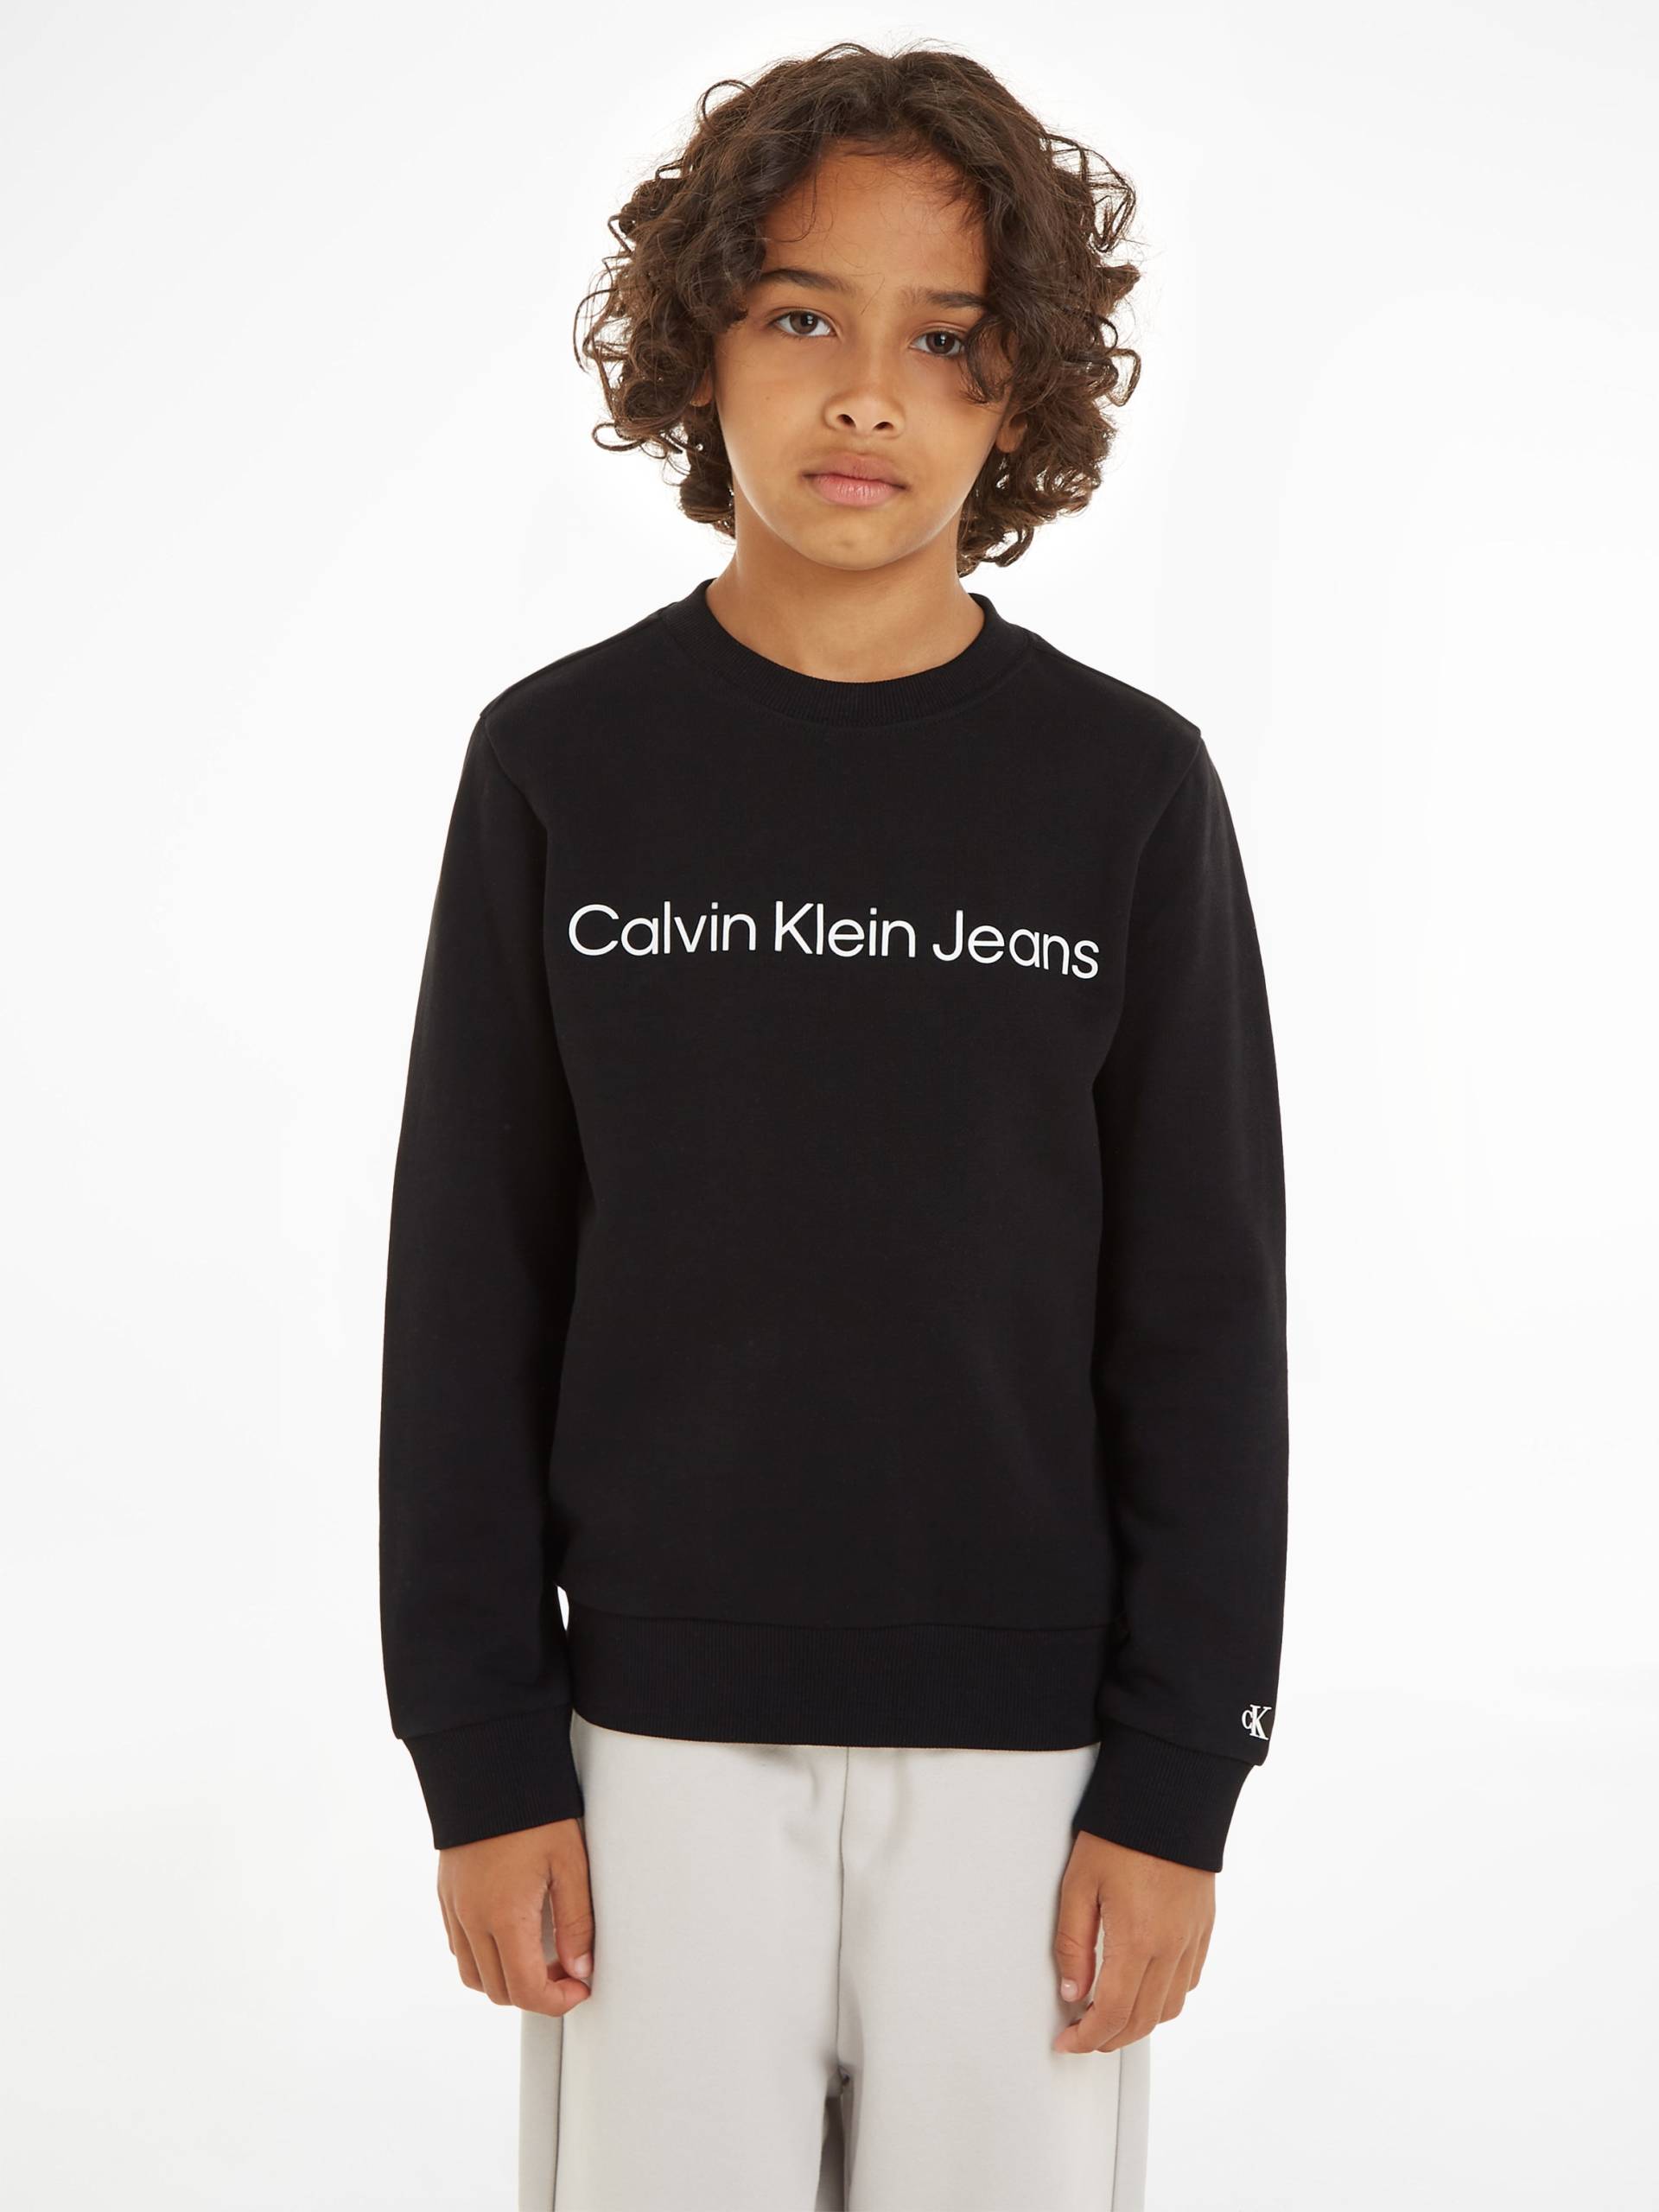 Calvin Klein Jeans Sweatshirt »INST. LOGO REGULAR CN« von Calvin Klein Jeans